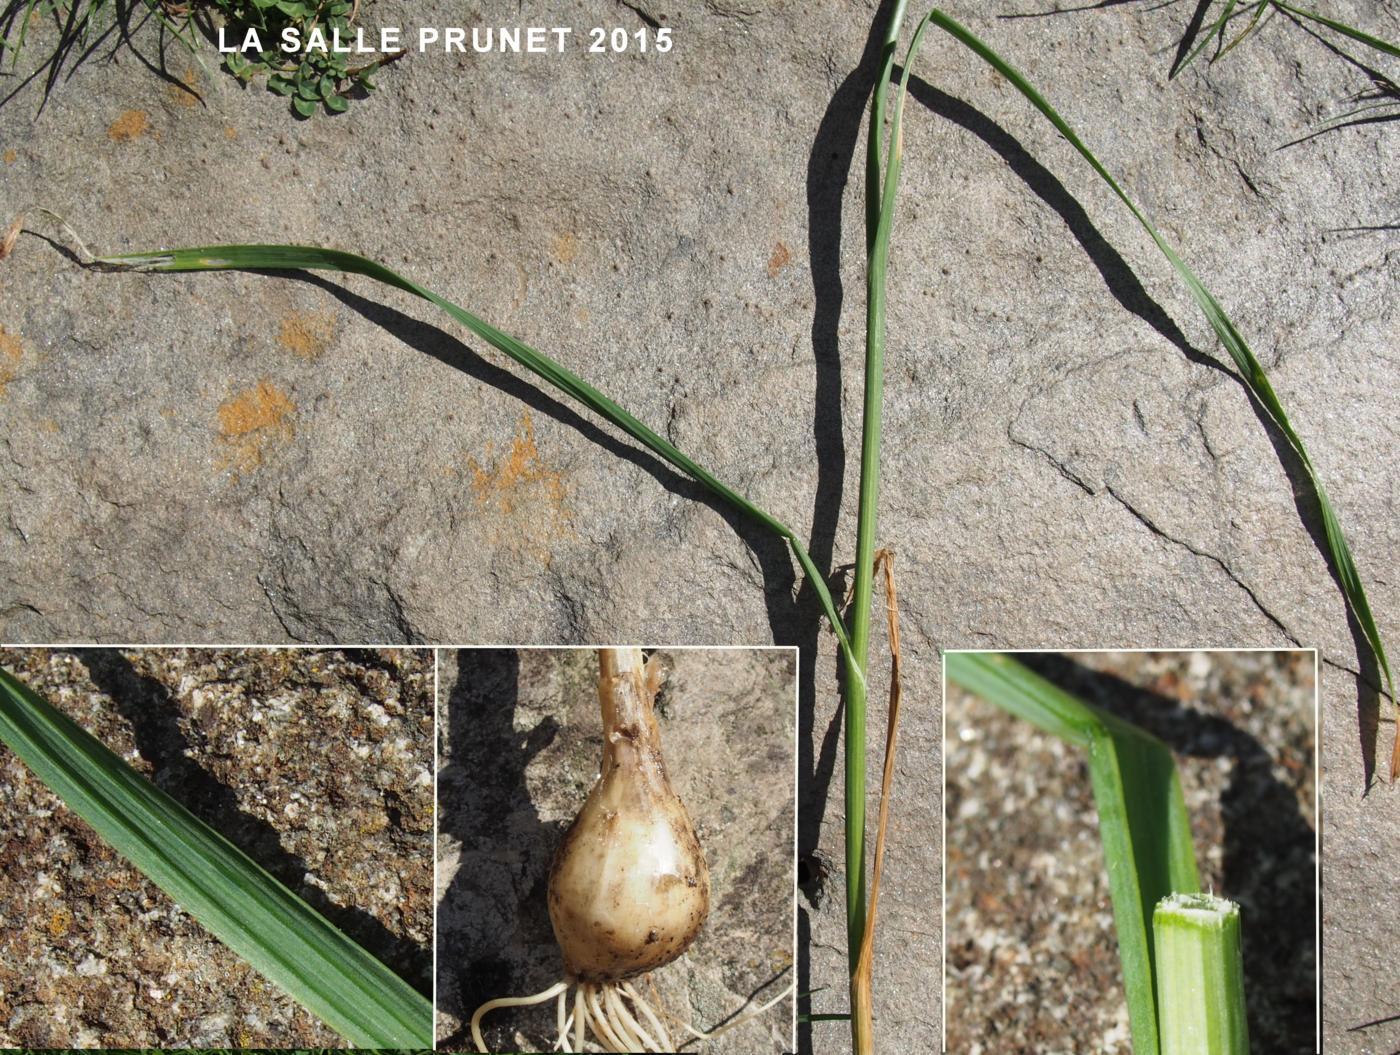 Garlic, (Flexible) leaf